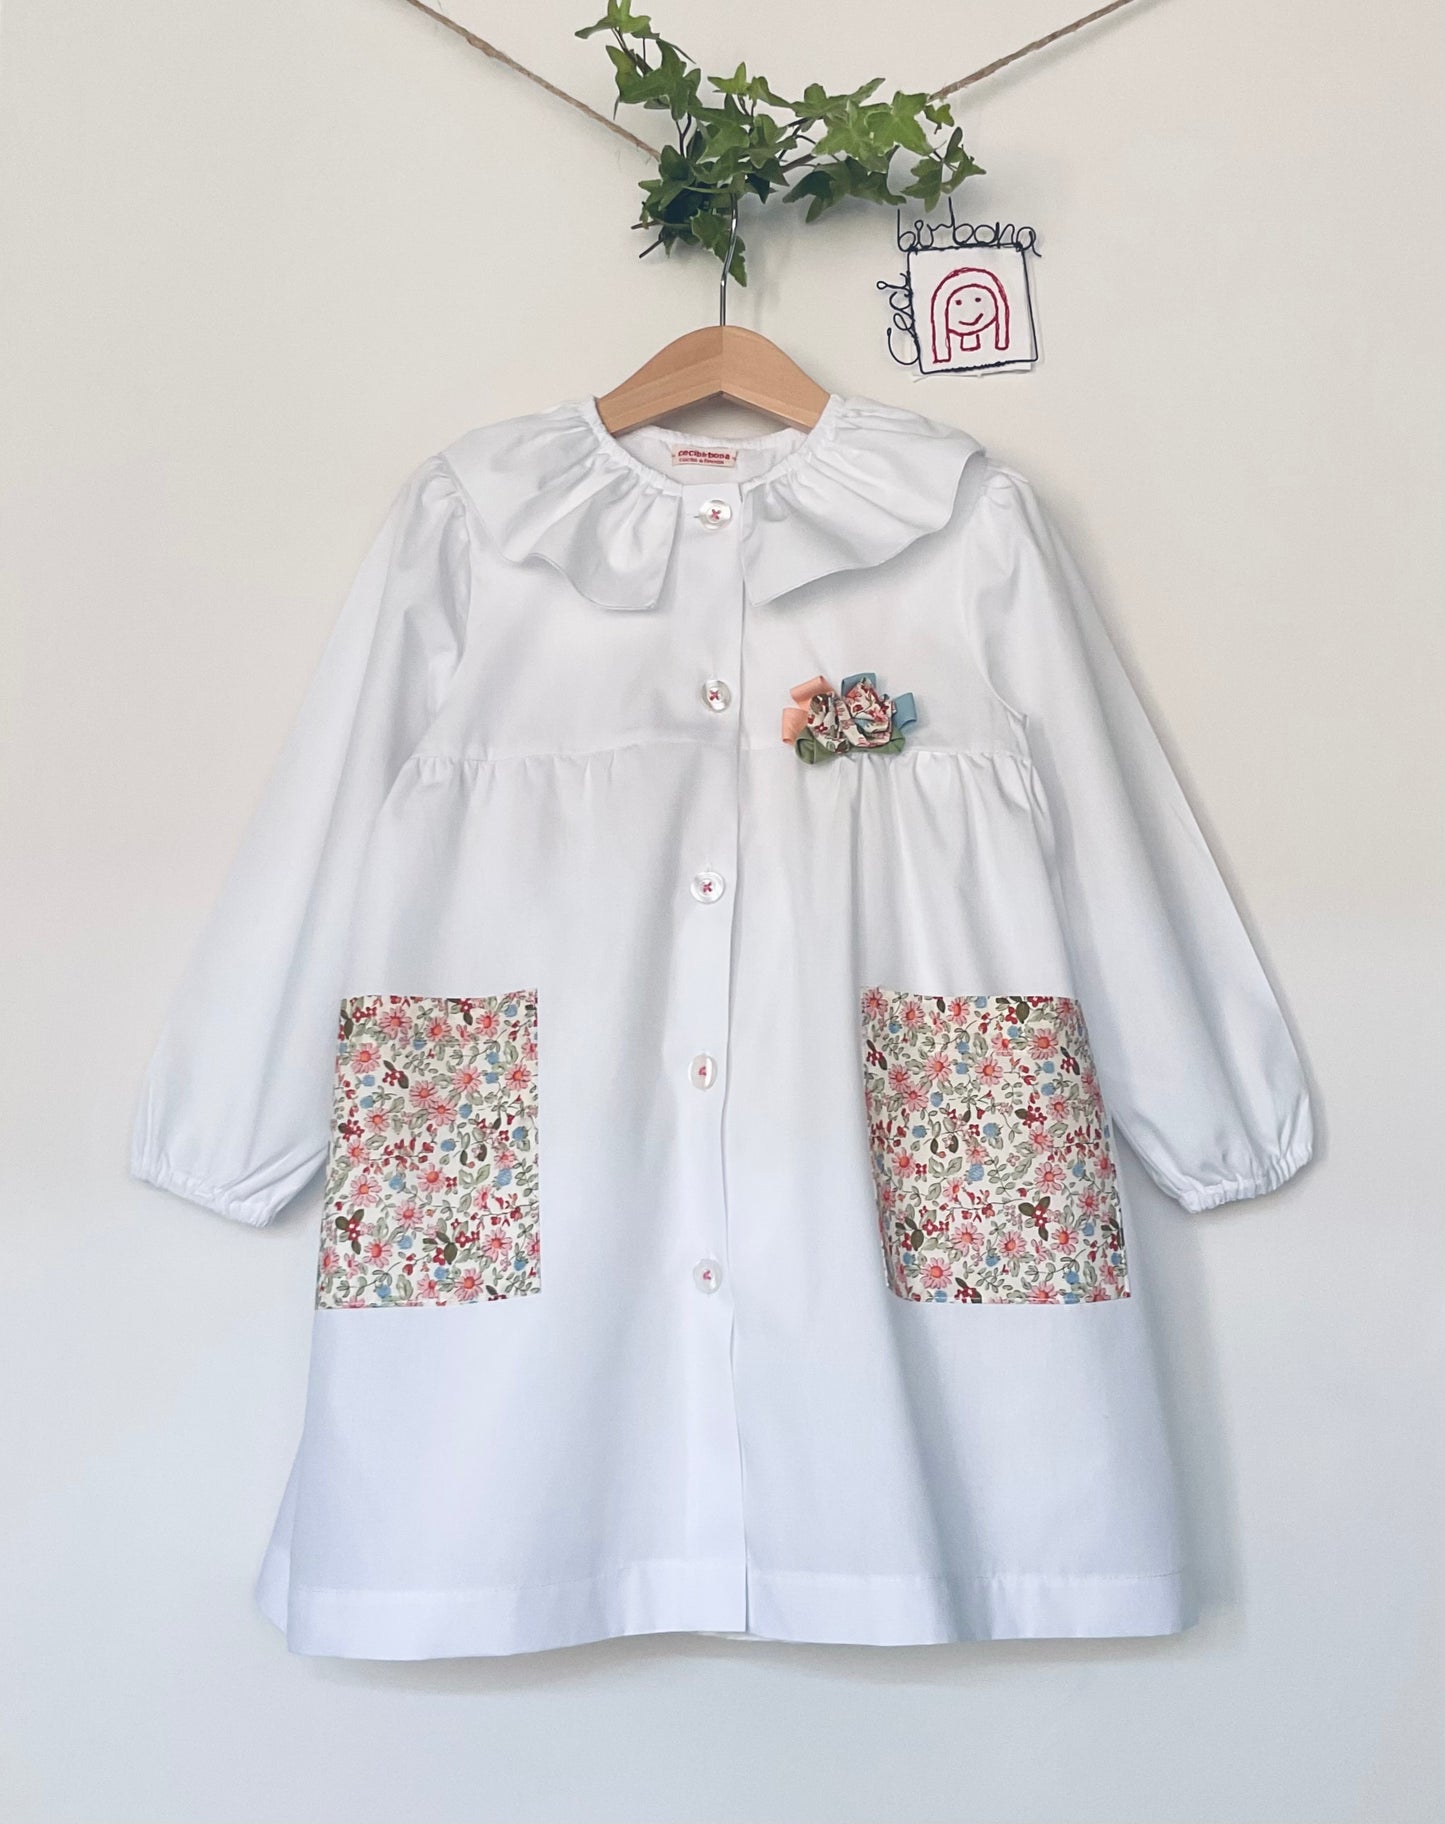 Le tablier Flora - Tablier blanc pour maternelle avec poches fleuries